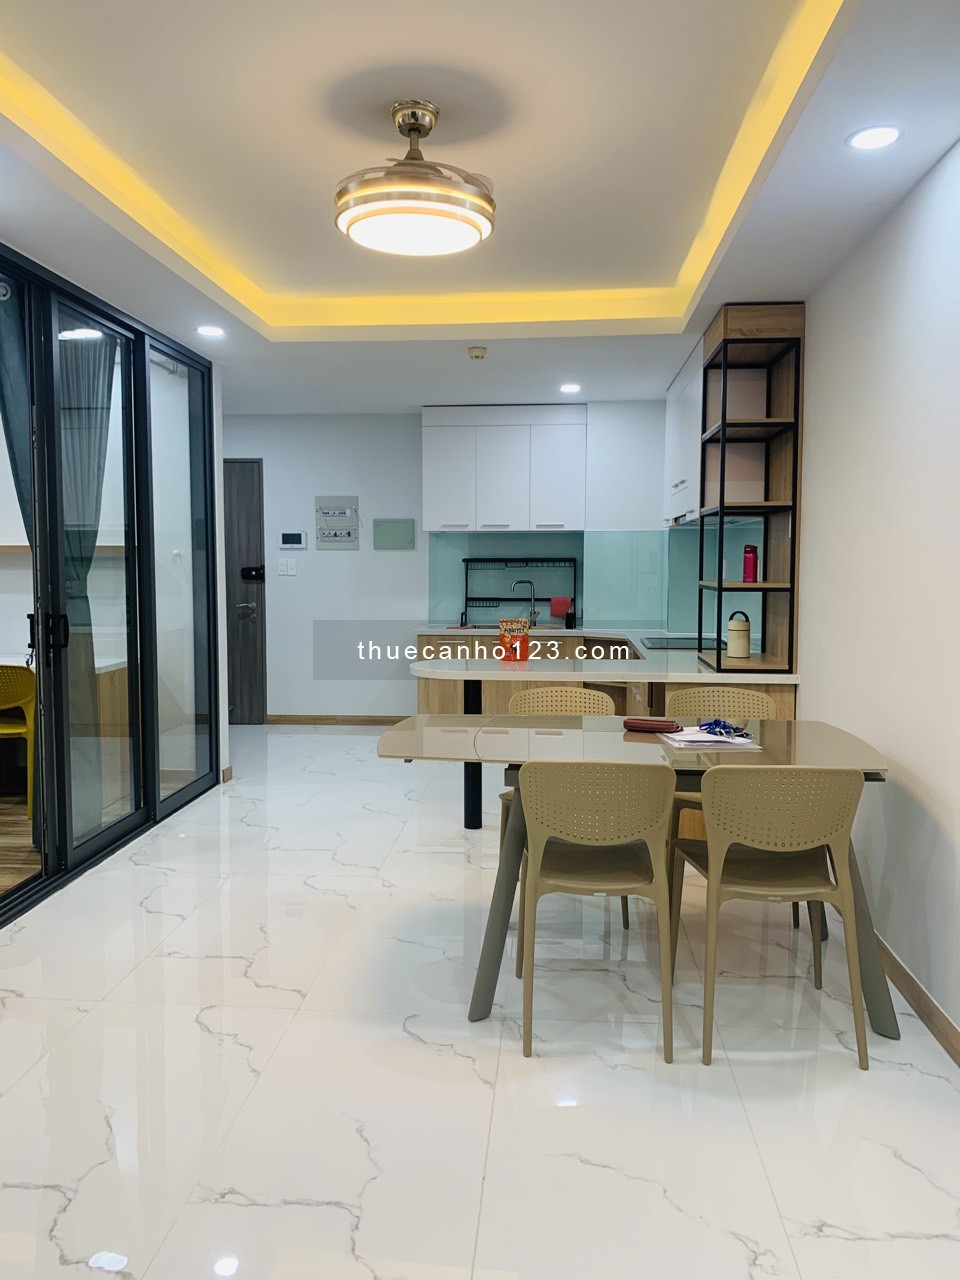 Cho thuê căn hộ tại Saigon south 2 pn 2 wc - Giá 15tr - Full nội thất mới - LH 0327501378